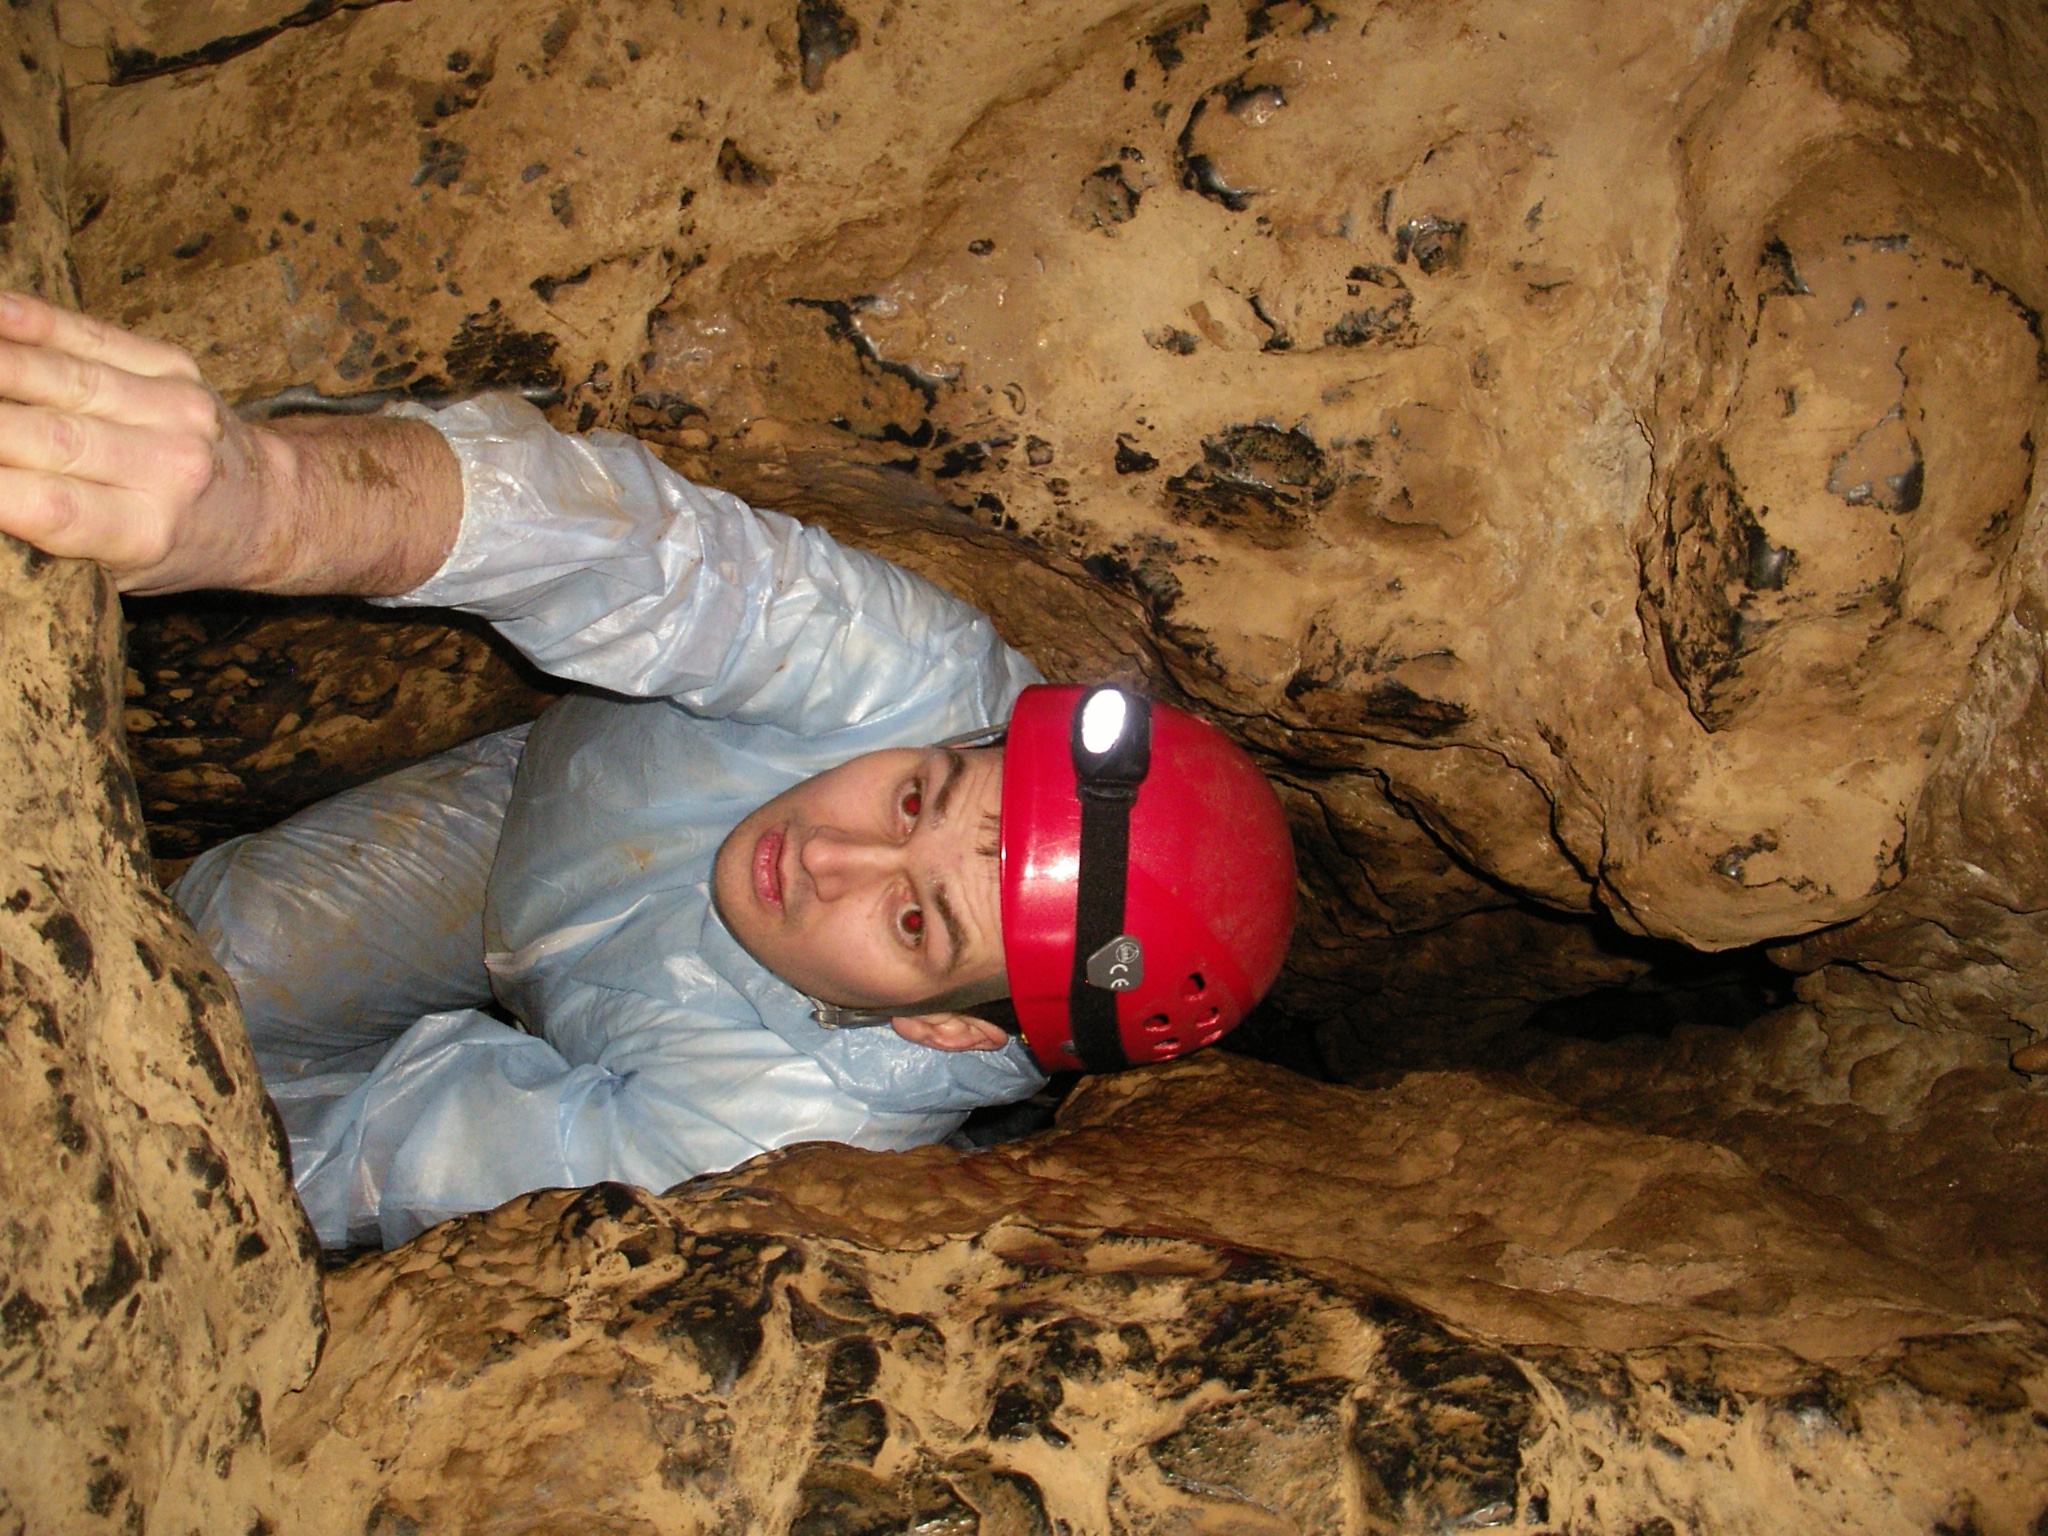 Beleef een bizarre ondergrondse wereld door samen als team een grot te exploreren.